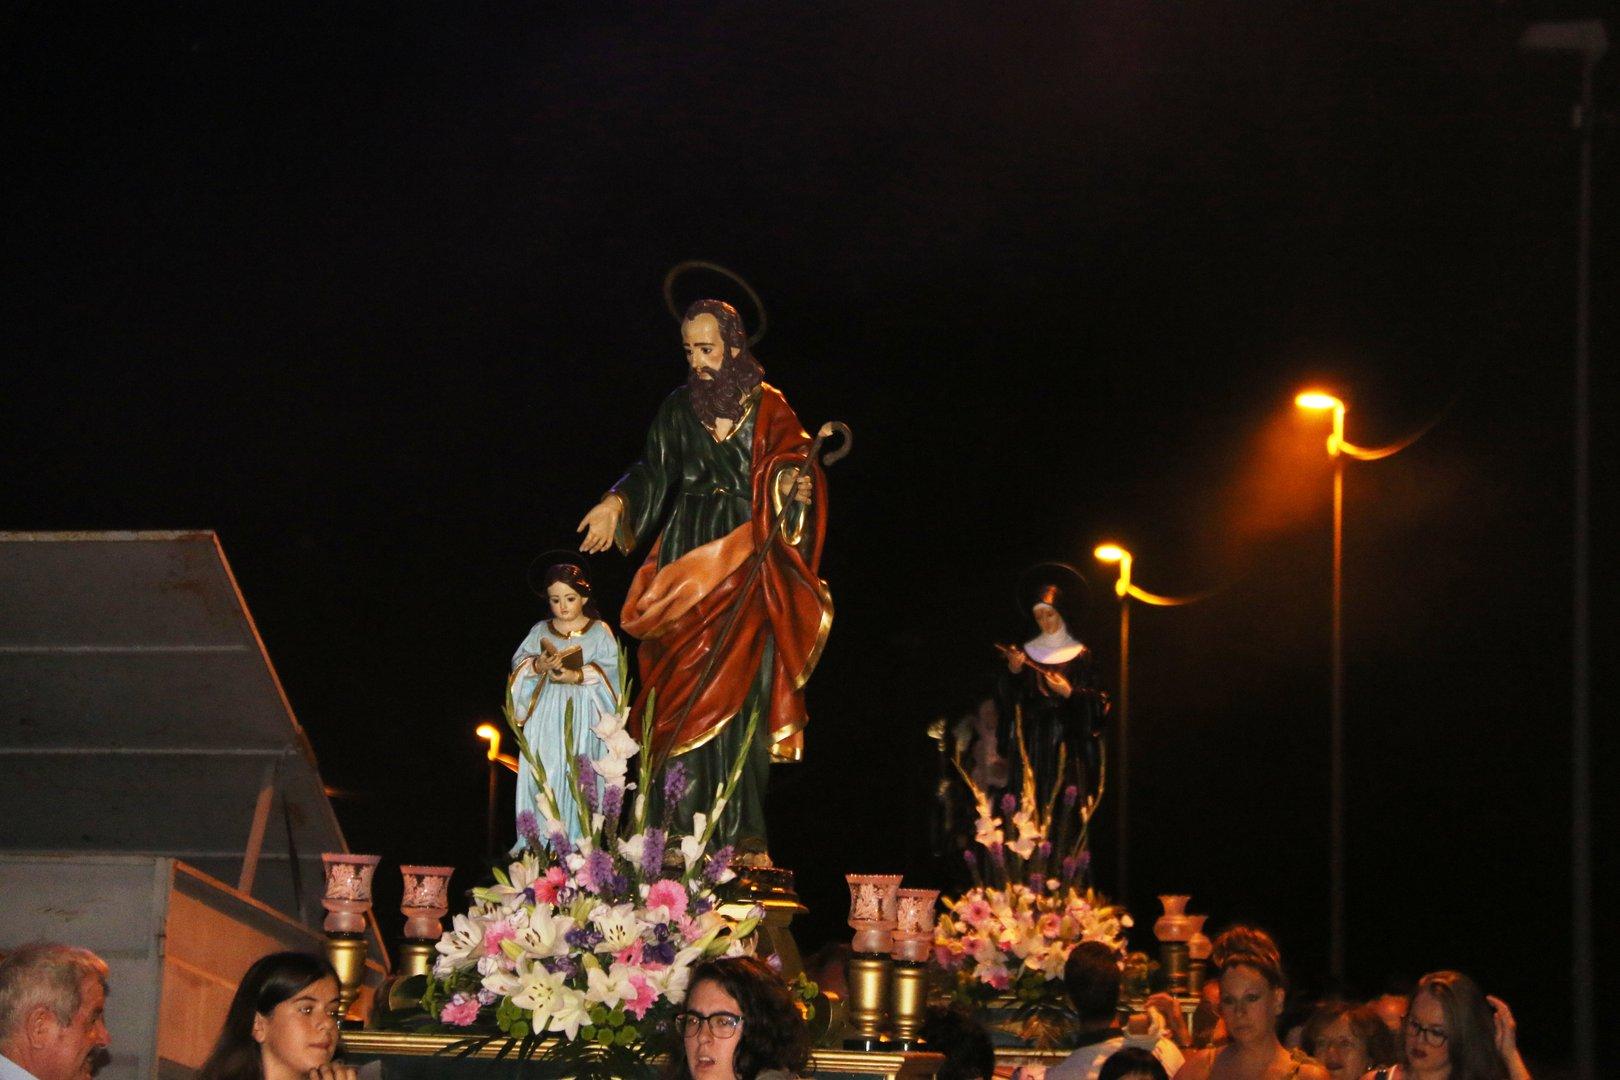 Fiestas de Campillo en Ojós 2017-Procesión